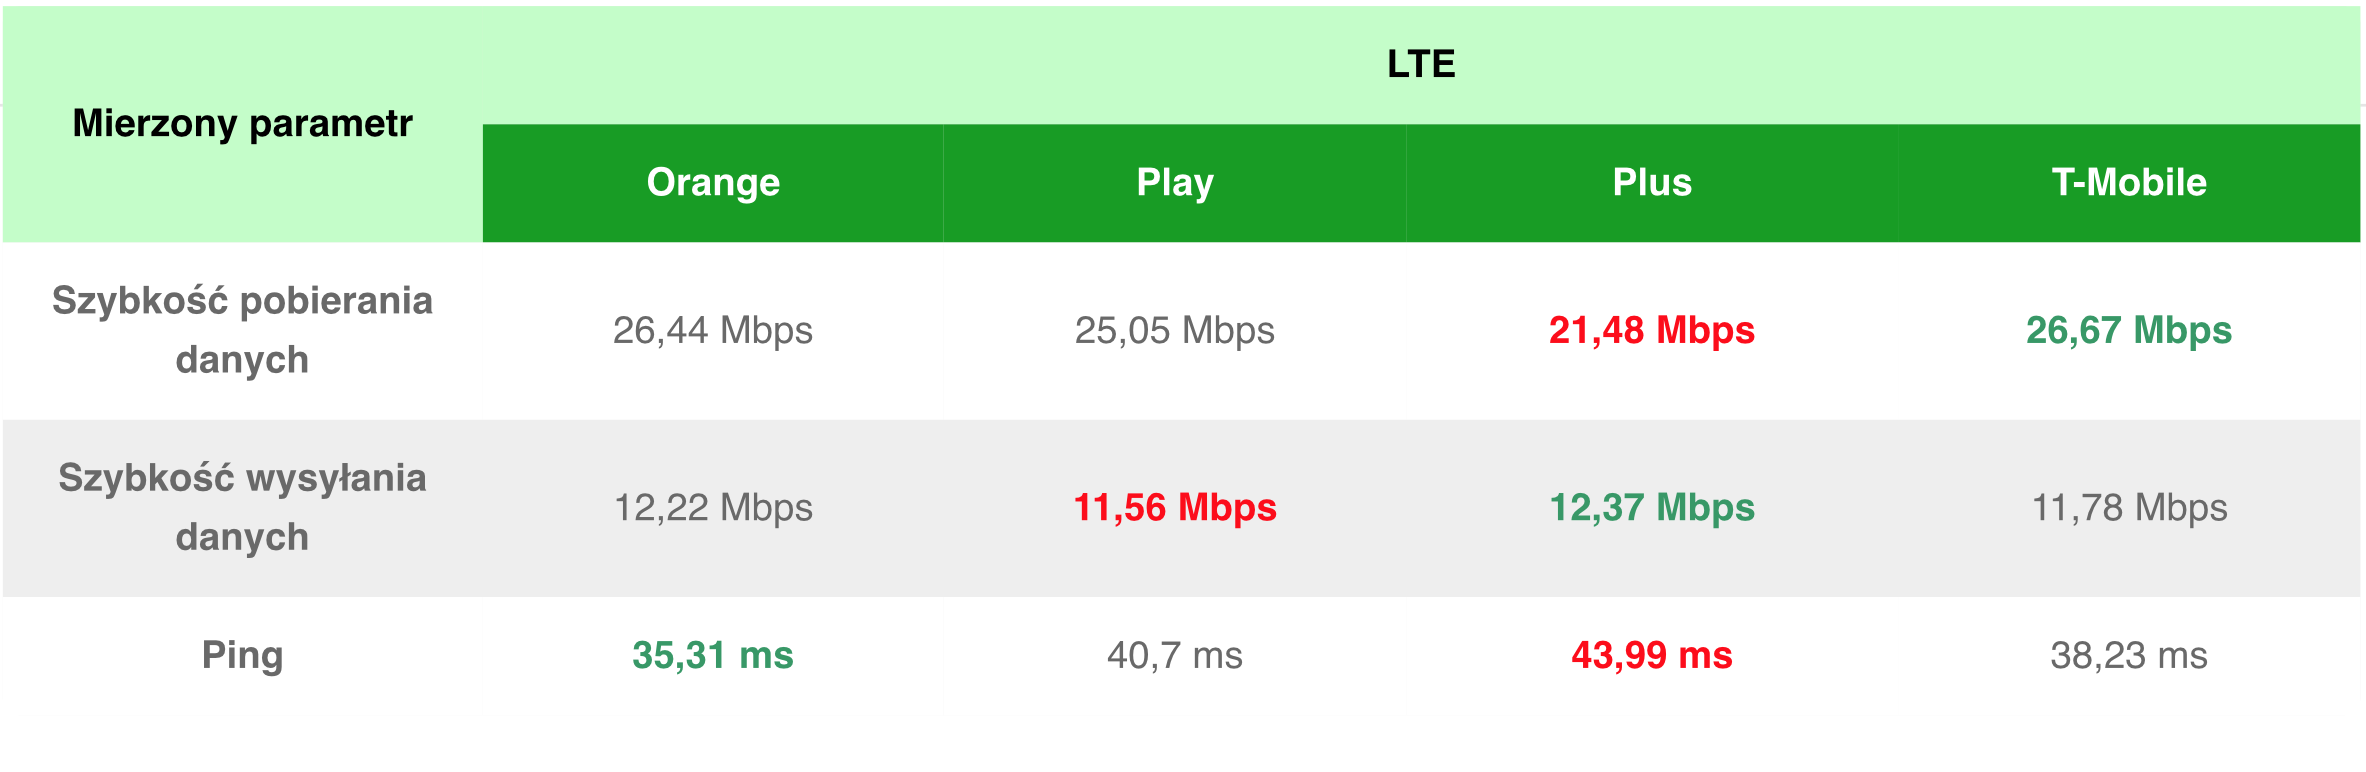 Ranking prędkości internetu mobilnego 4G/LTE w Polsce (czerwiec 2019)